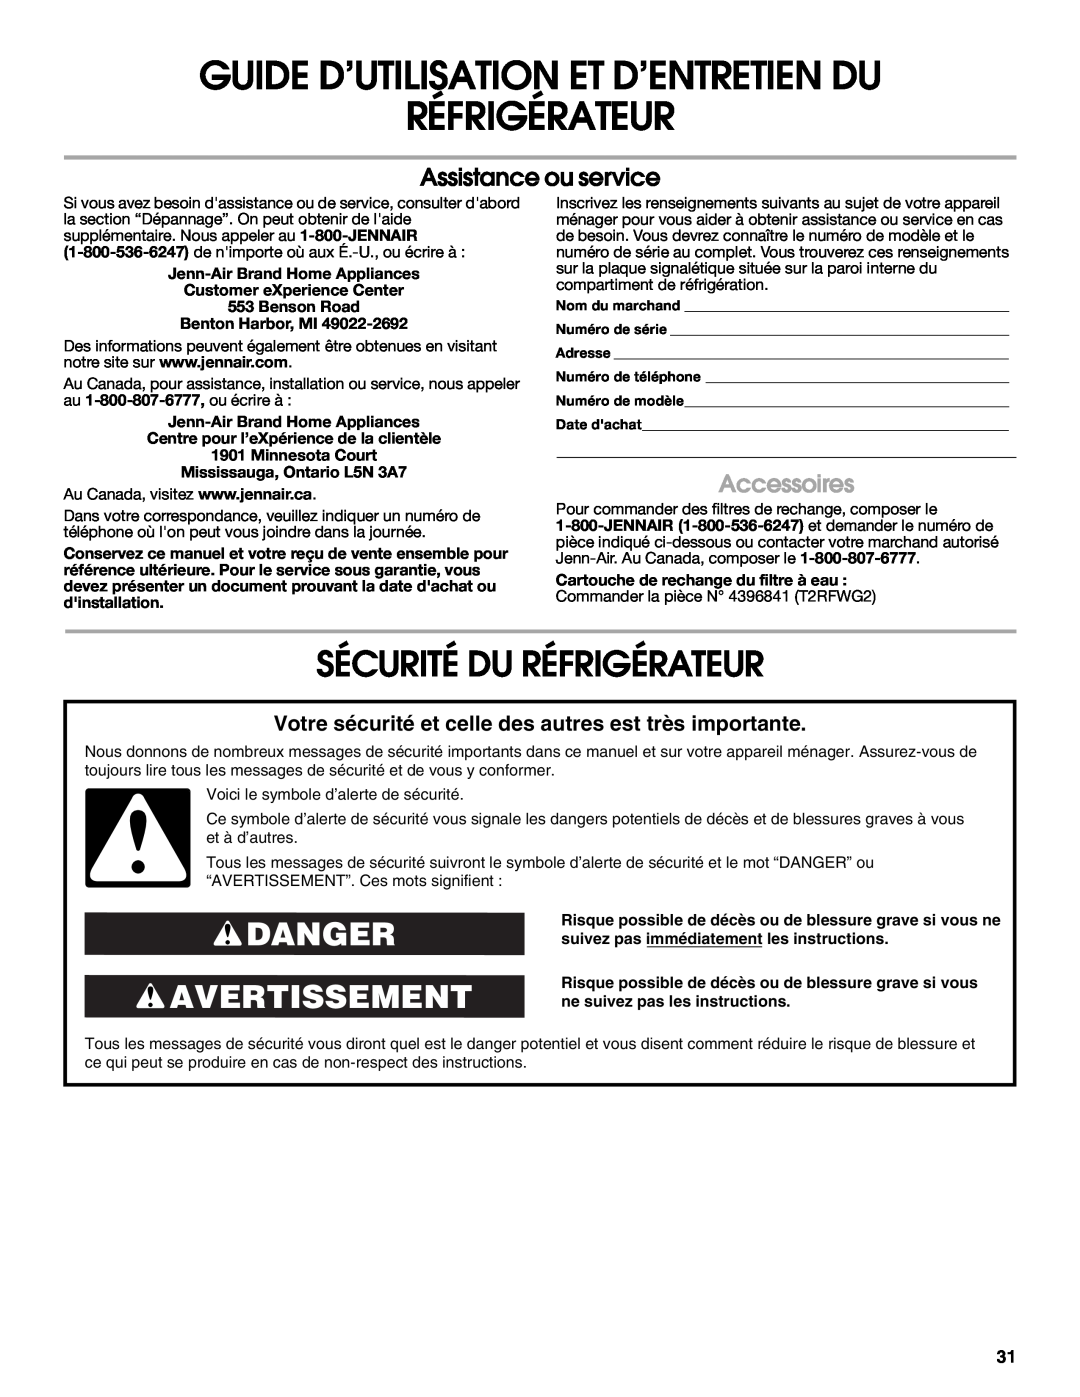 Jenn-Air W10183787A Guide D’Utilisation Et D’Entretien Du Réfrigérateur, Sécurité Du Réfrigérateur, Danger Avertissement 